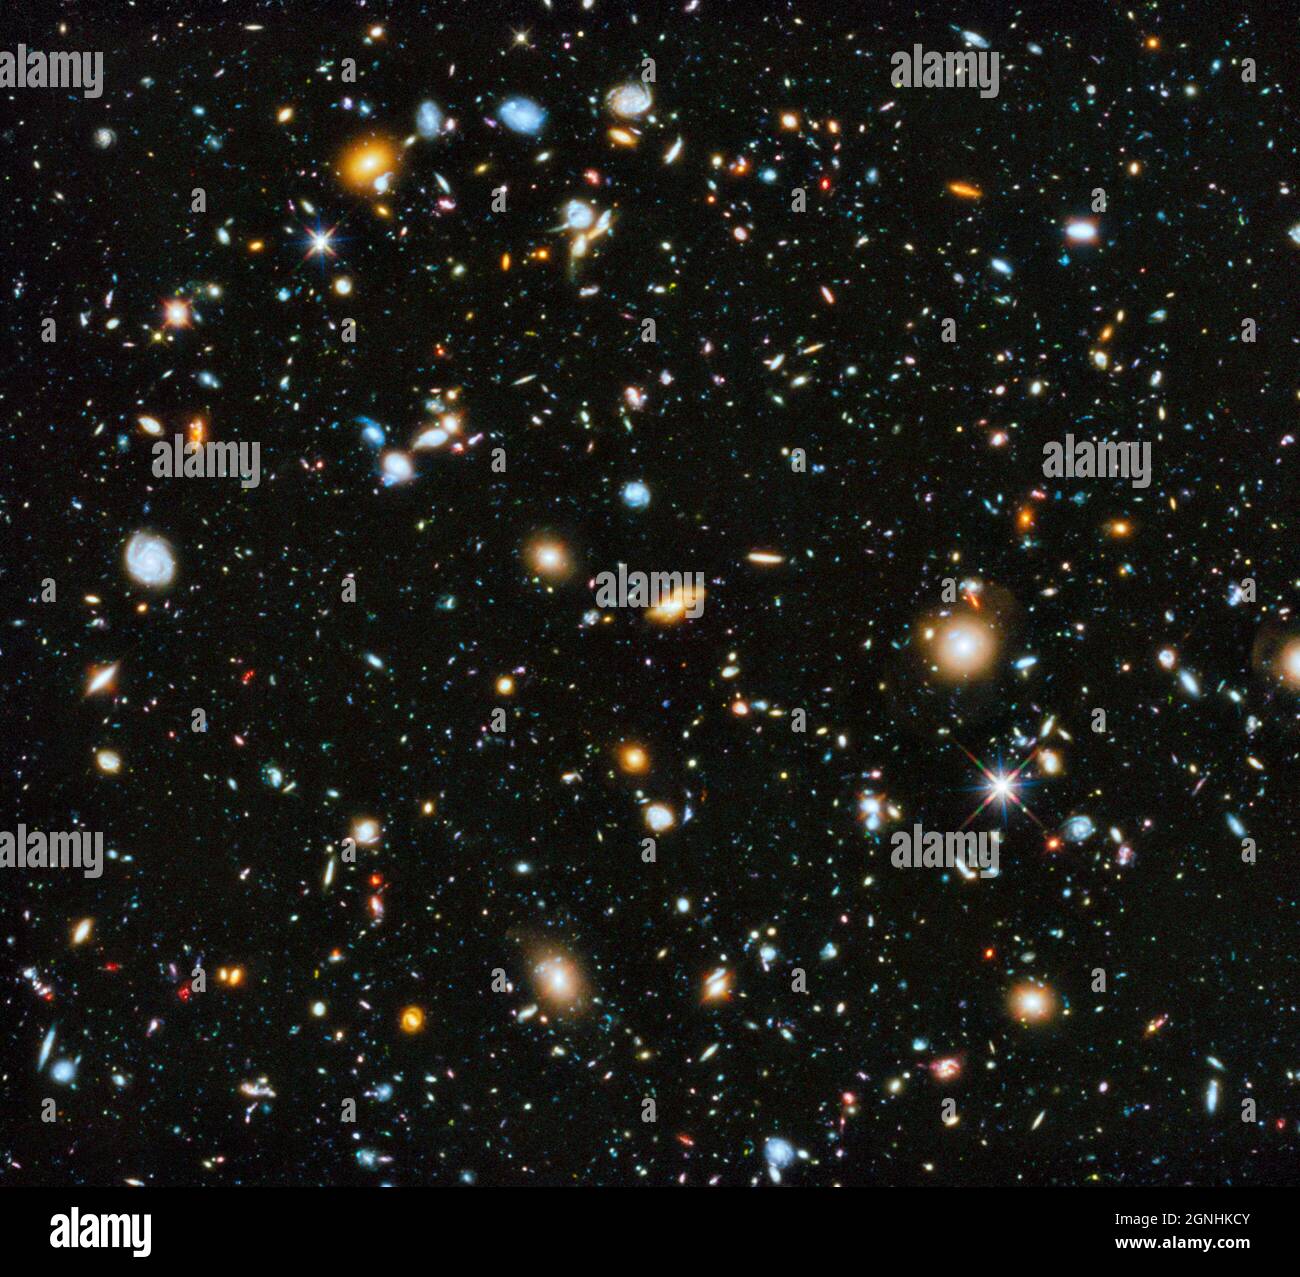 Il famoso Hubble Ultra Deep Field, che contiene 10,000 galassie lontane. L'area di questa immagine è di 26 milionesimi del cielo, da cui si può dedurre che l'universo visibile contiene 260 miliardi di galassie. . Fonte immagine NASA/ESA Hubble Space Telescope Foto Stock